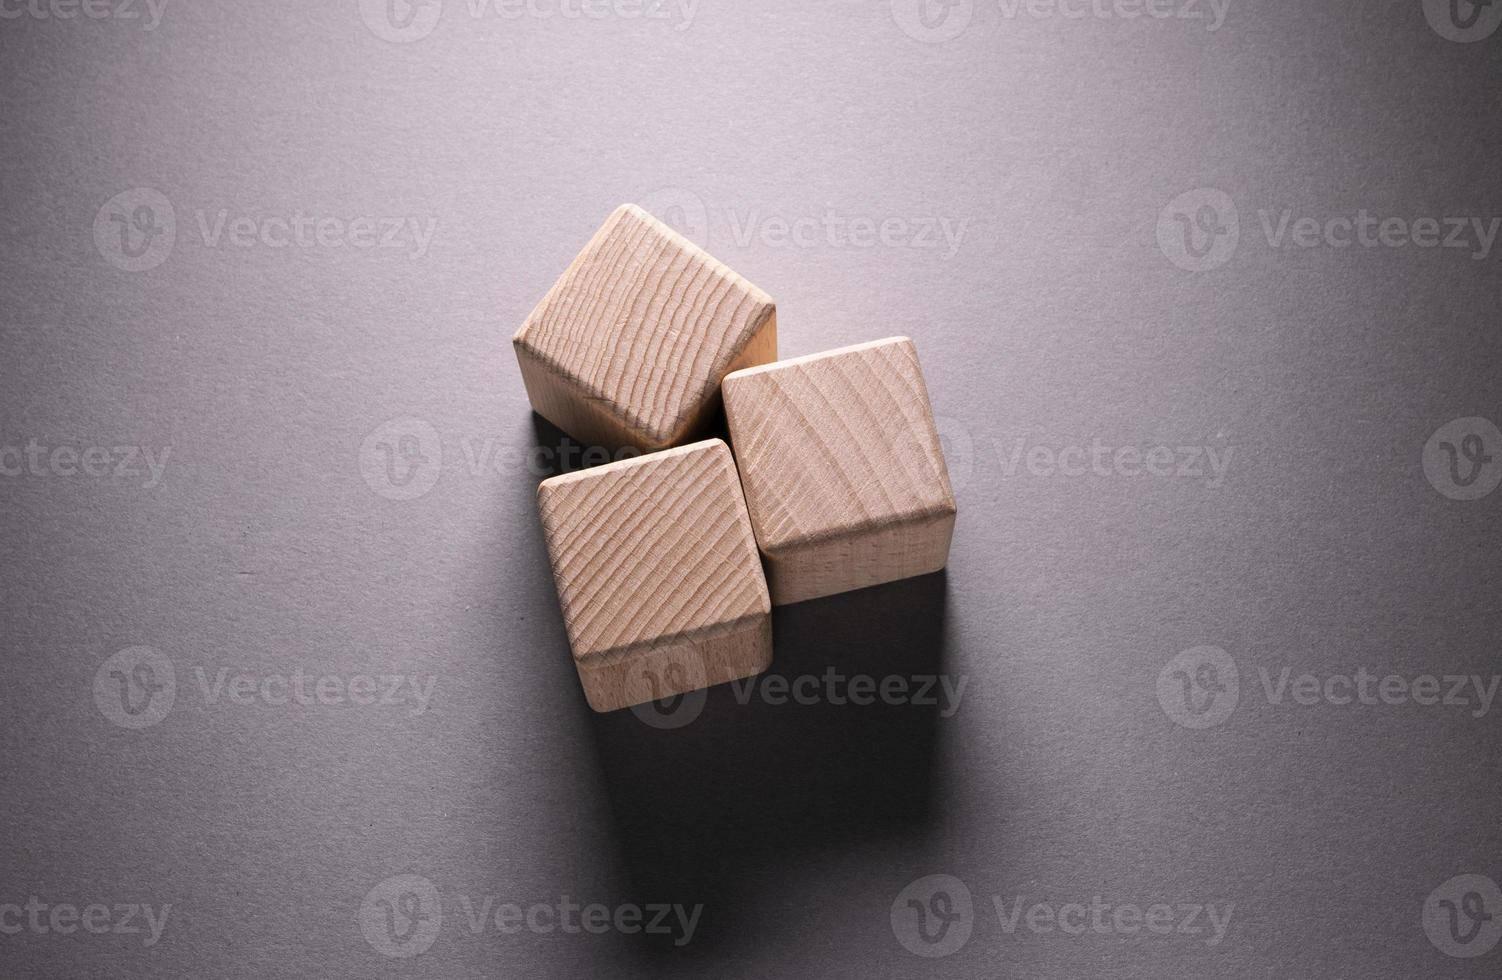 houten geometrische vormen kubussen foto